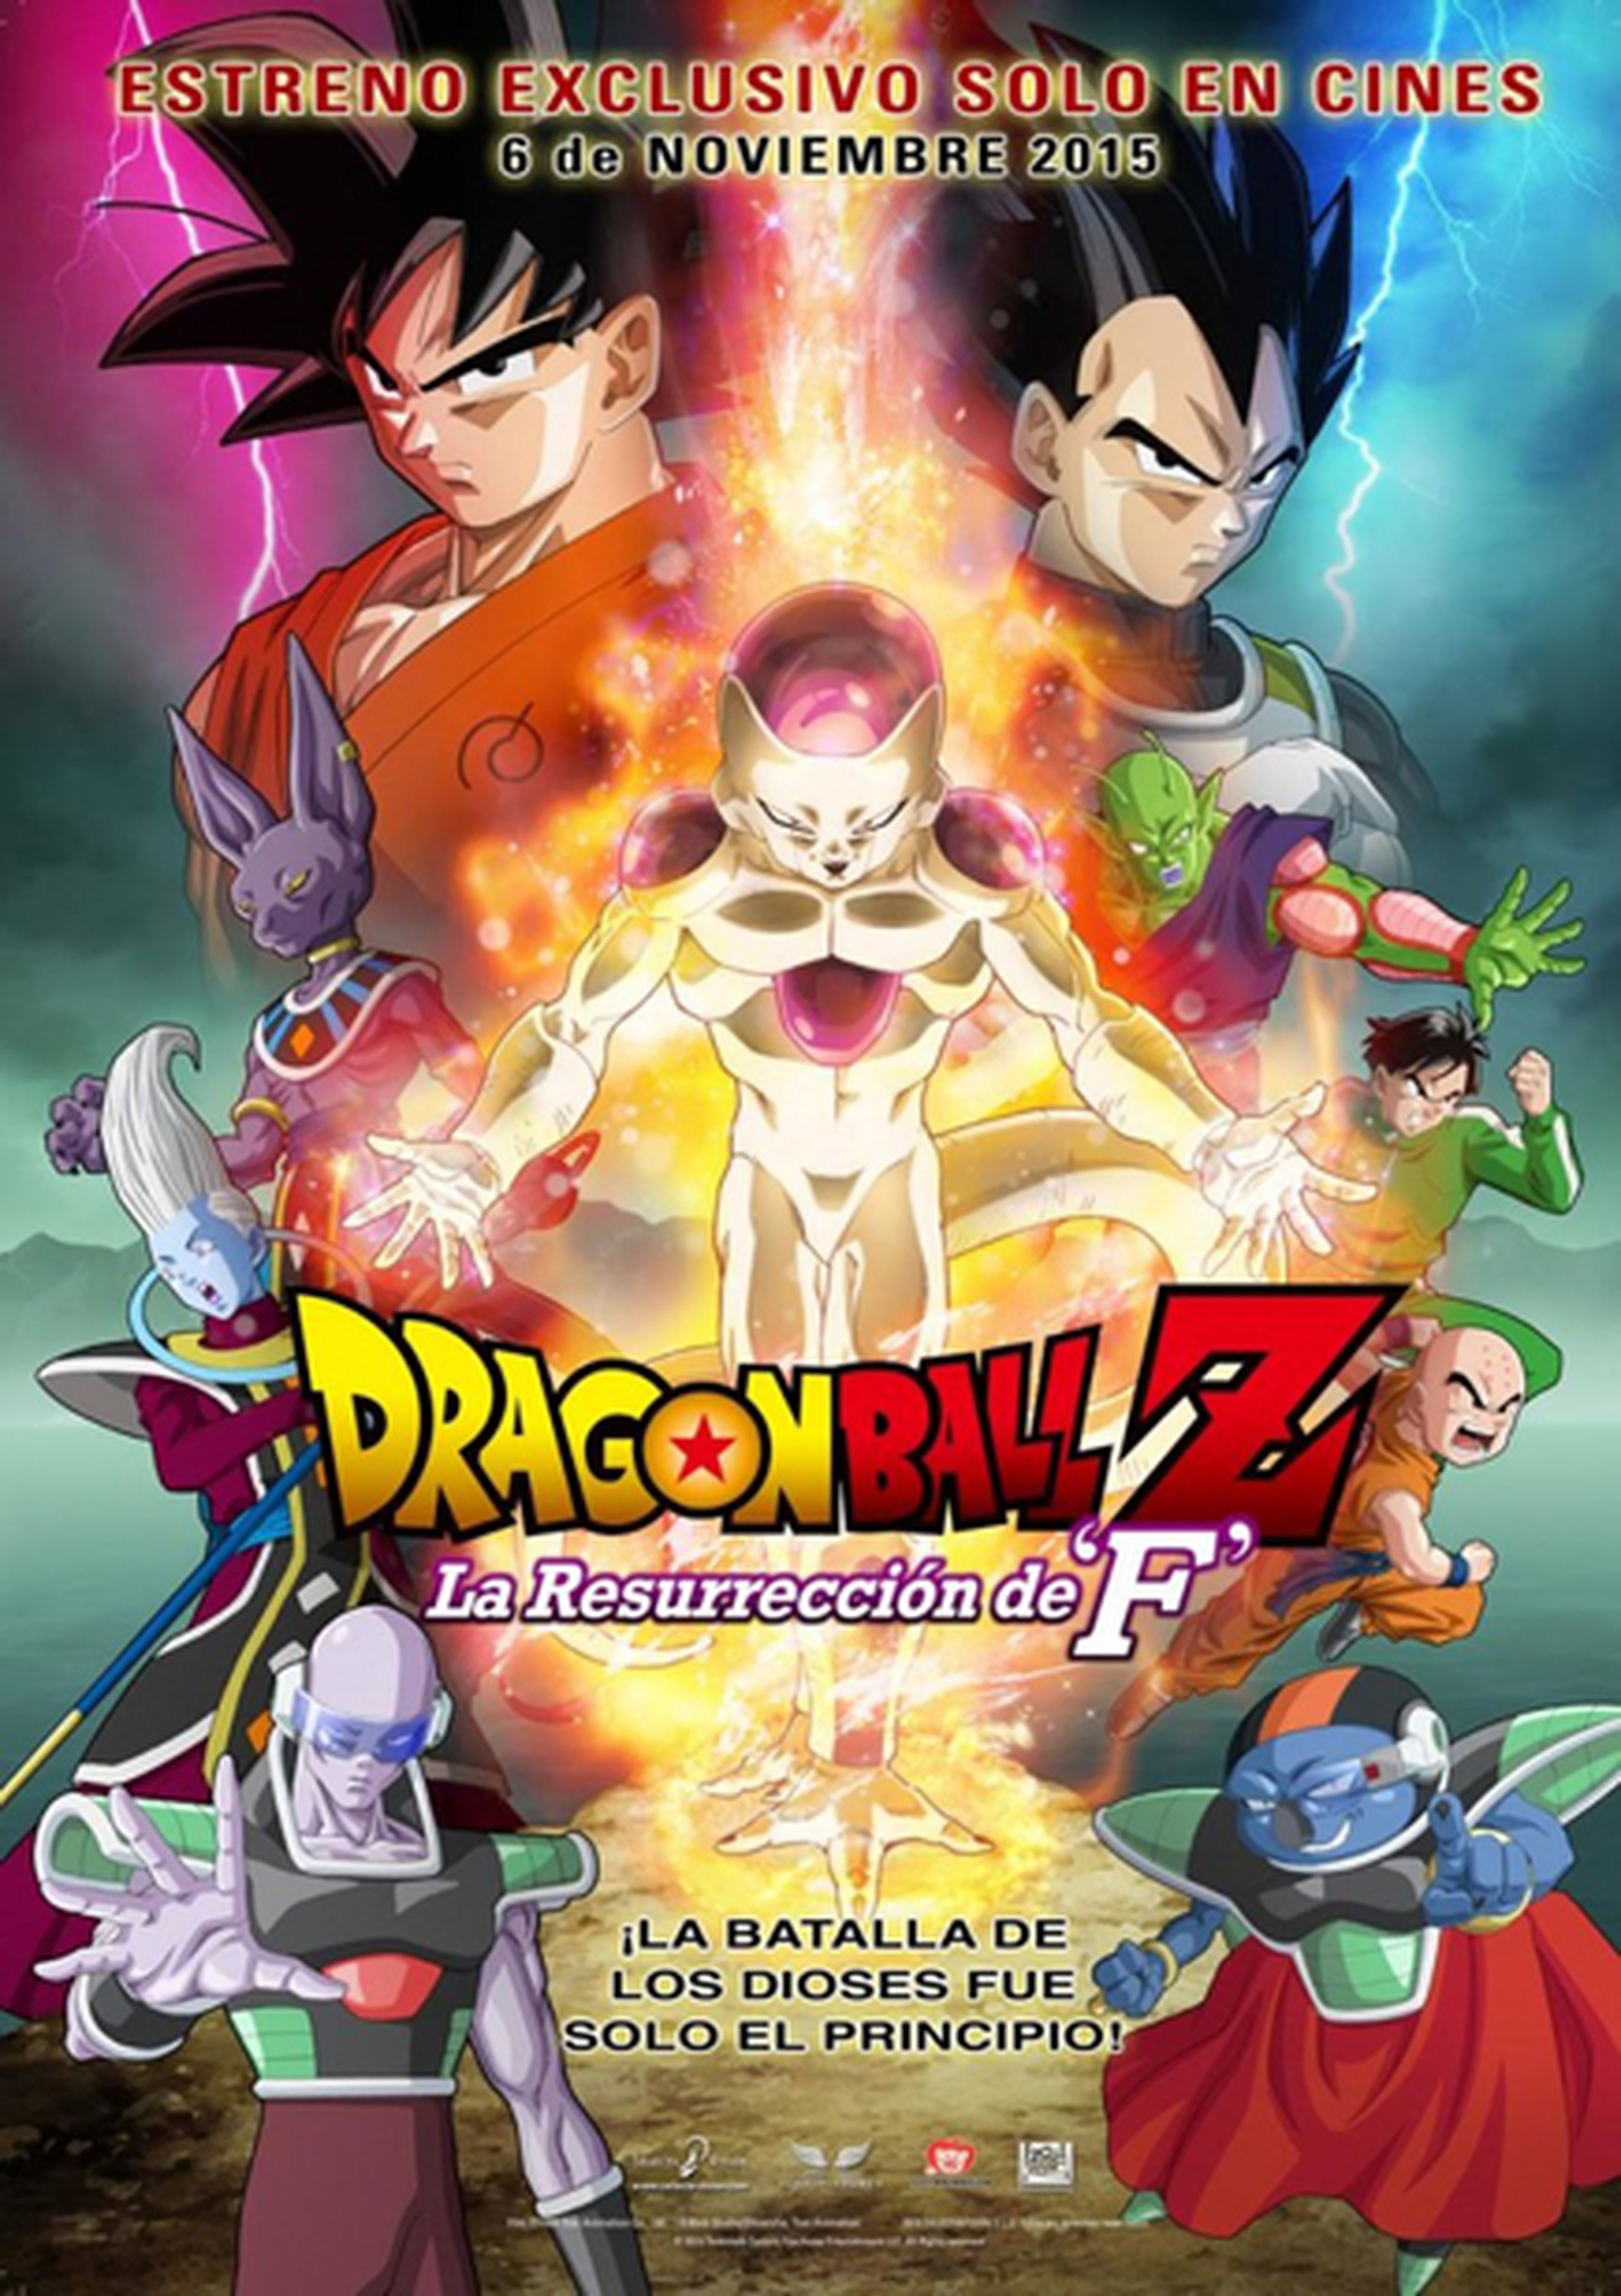 Dragon Ball Z: La Resurrección de F saldrá en DVD y BD en primavera